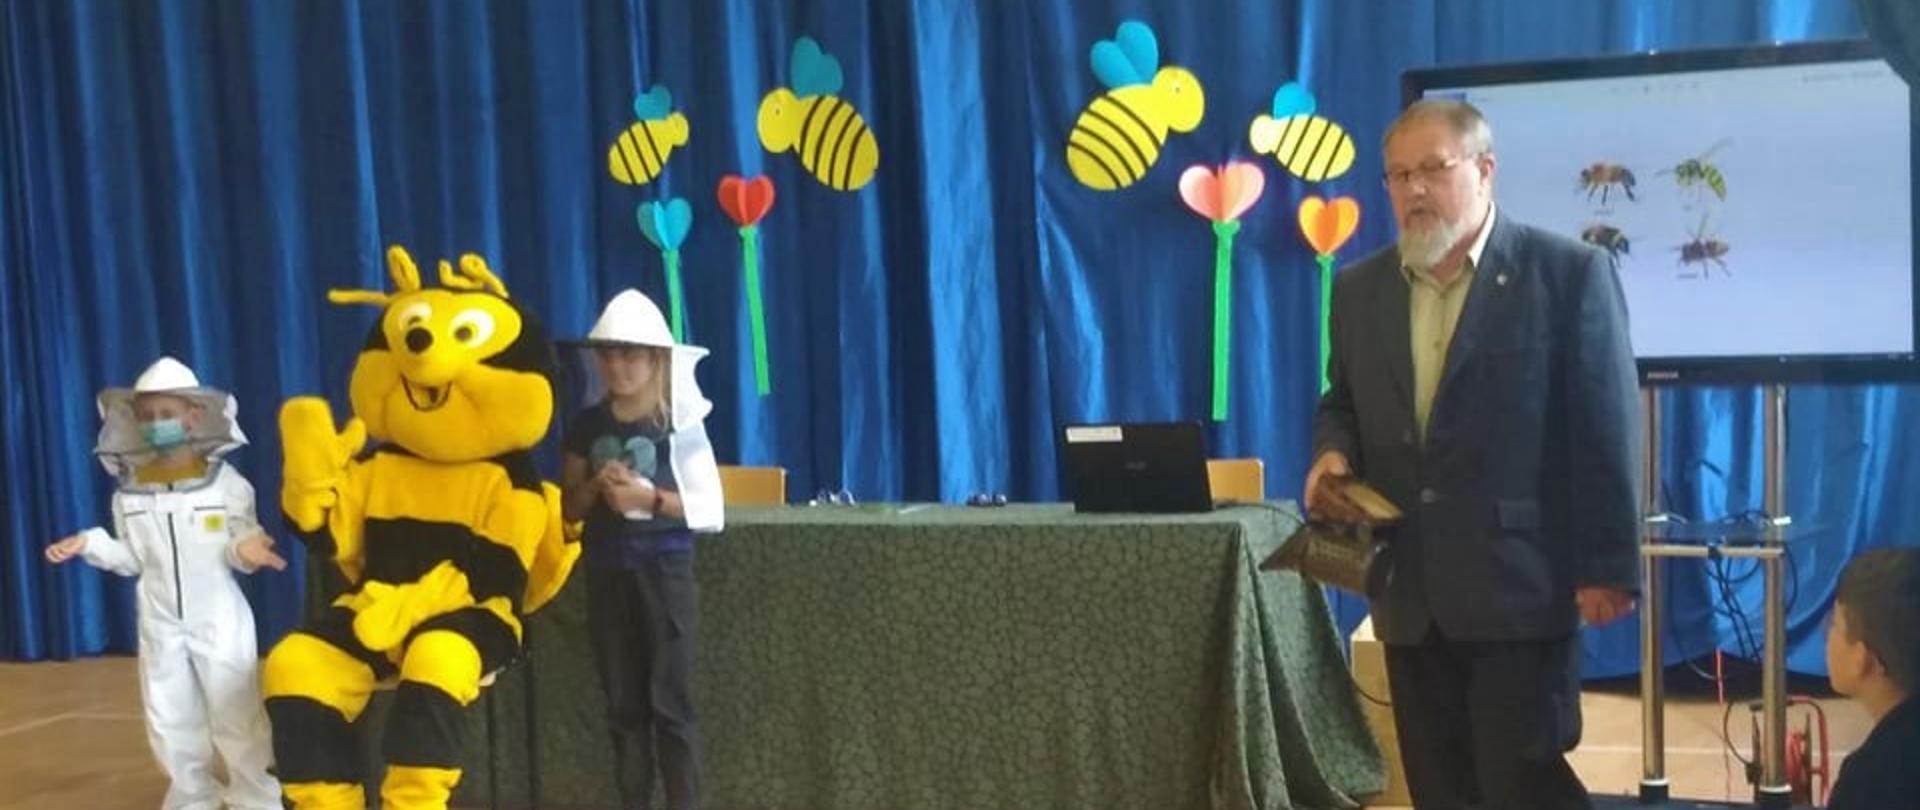 Dwoje dzieci w strojach pszczelarza stoi obok dużej maskotki pszczoły. Po ich lewej stronie stoi mężczyzna w marynarce i przemawia